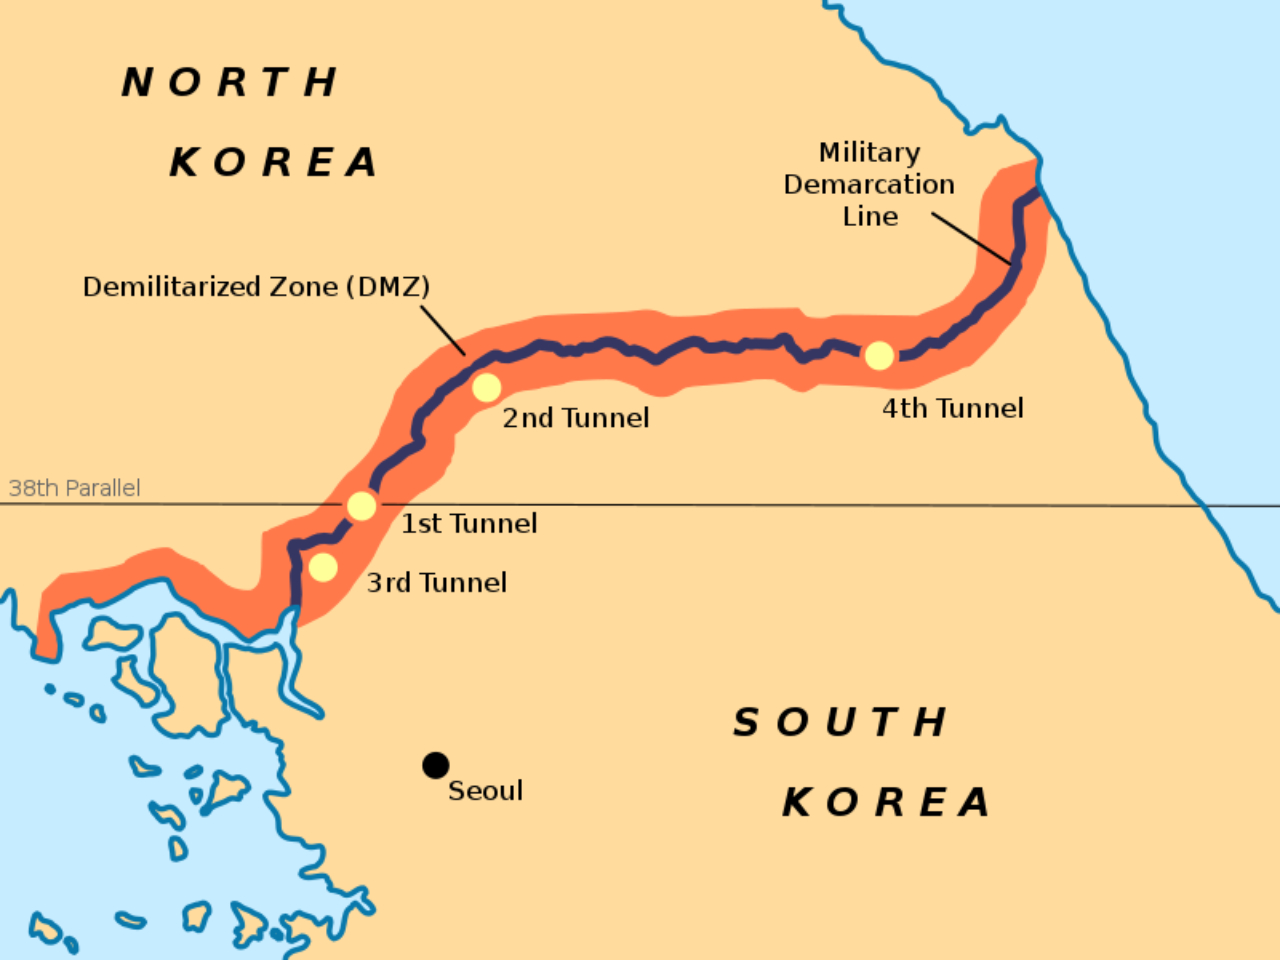 Mapa com a divisão no paralelo 38 entre Coreia do Norte e Coreia do Sul, destacando também a 